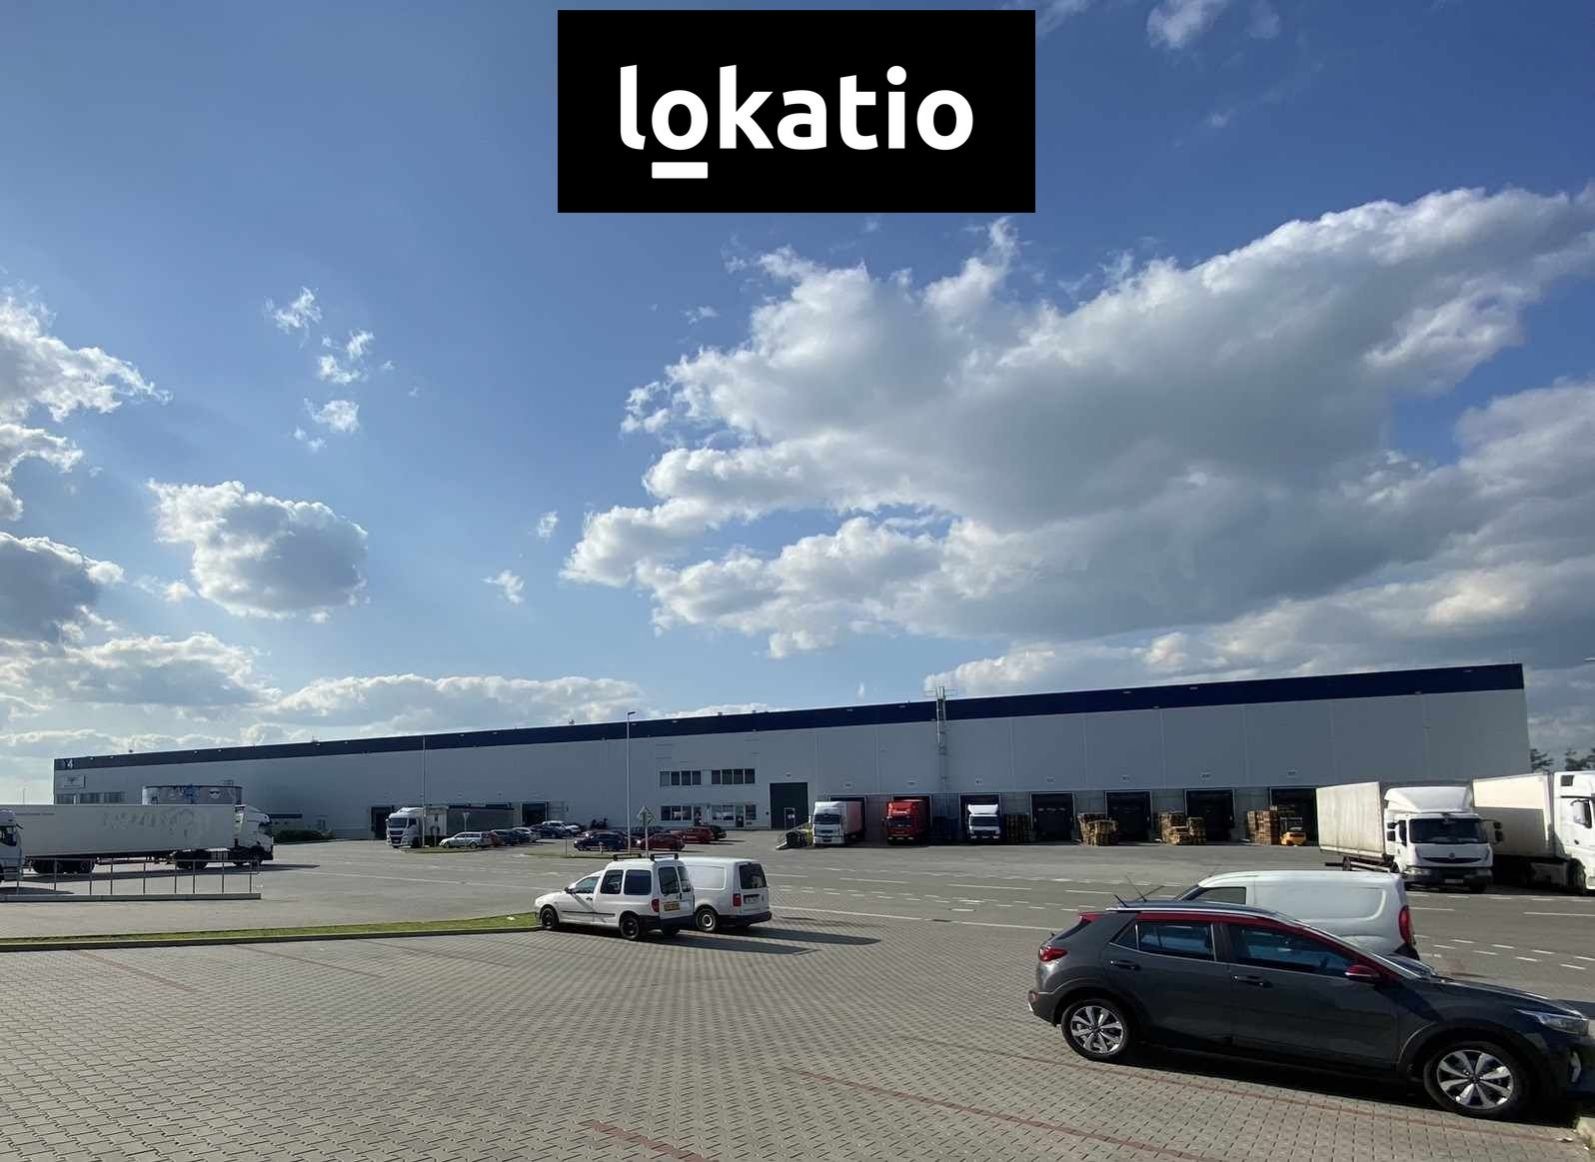 Pronájem - sklady, haly, logistický areál - Brno letiště 3.500 m2